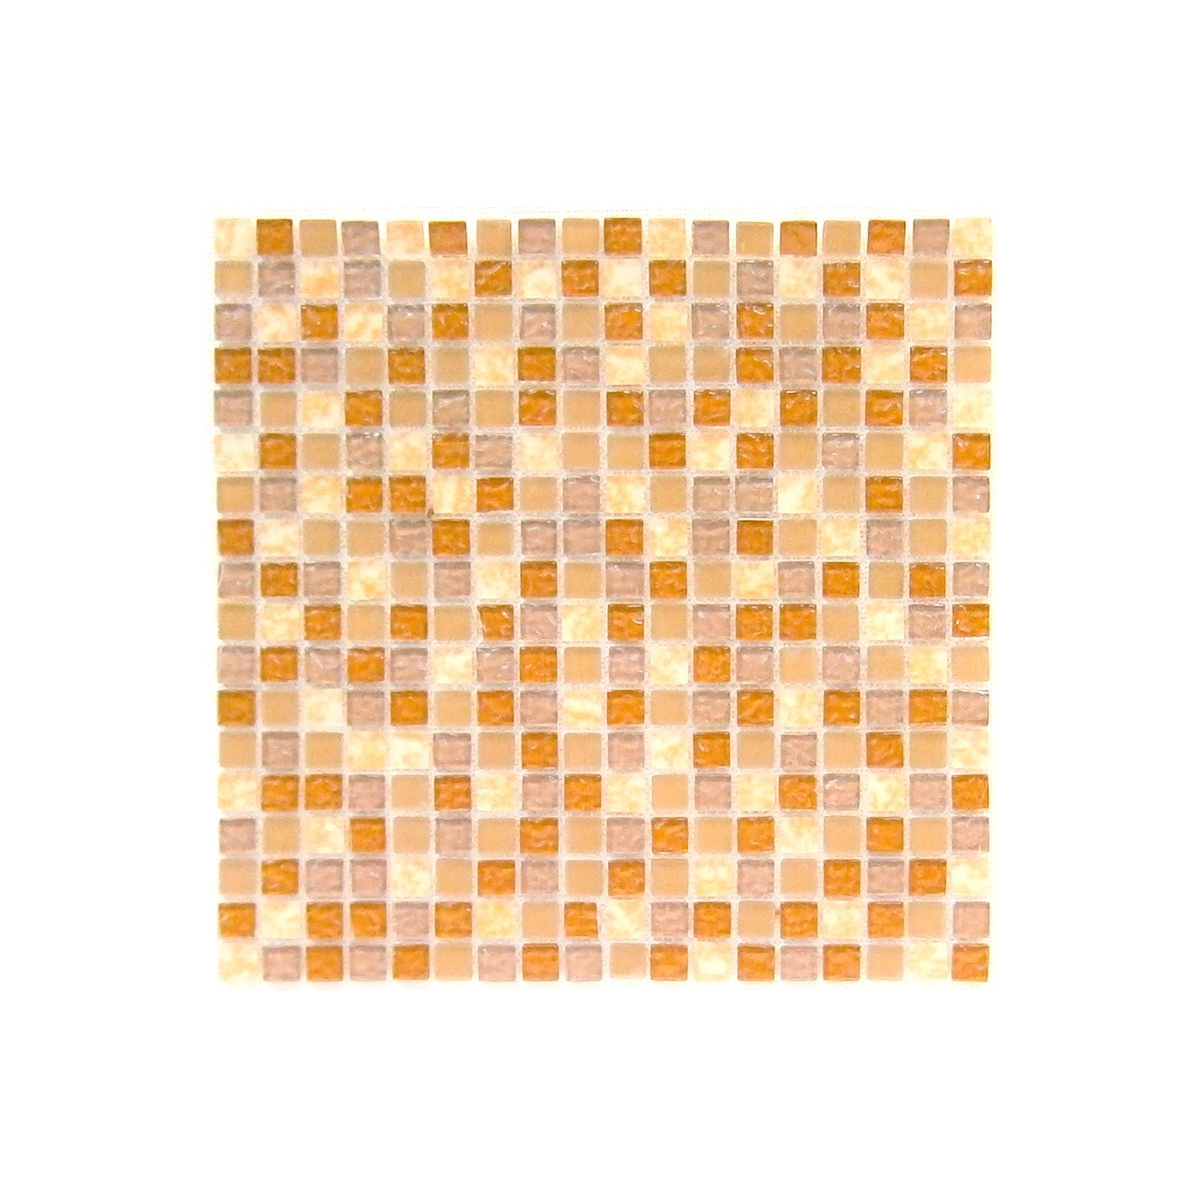 Mosaico de cristal Honey Spa 30,1x30,1 - Anjasora